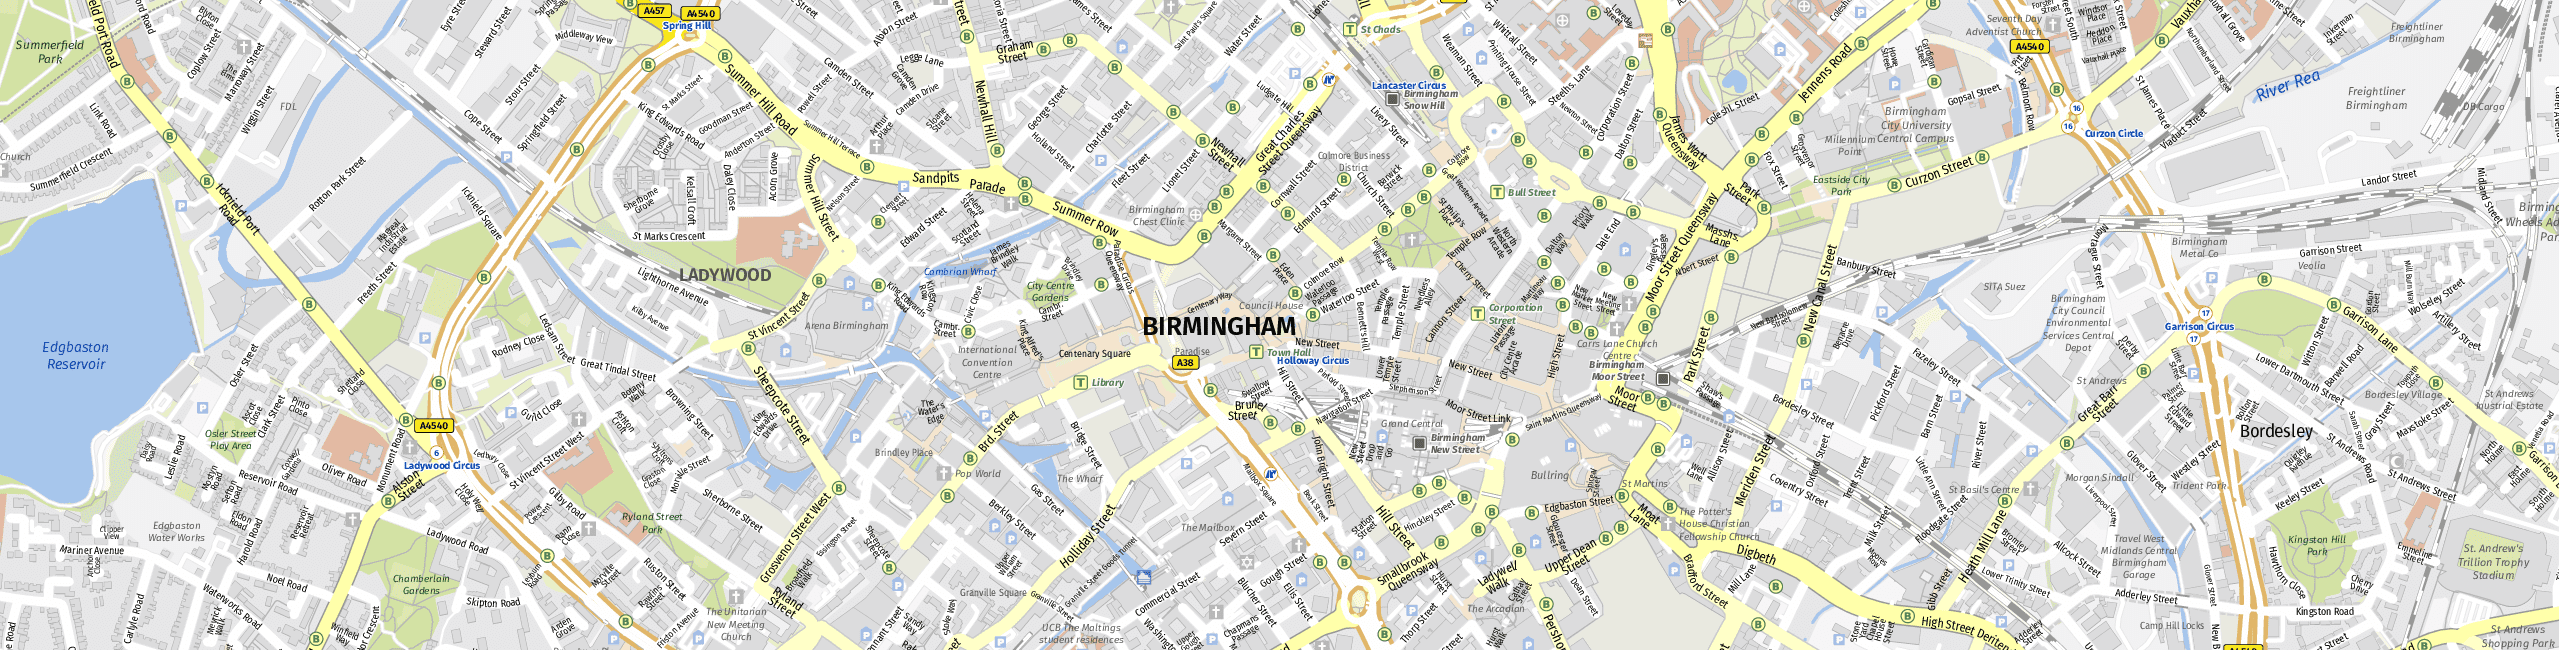 Stadtplan Birmingham zum Downloaden.